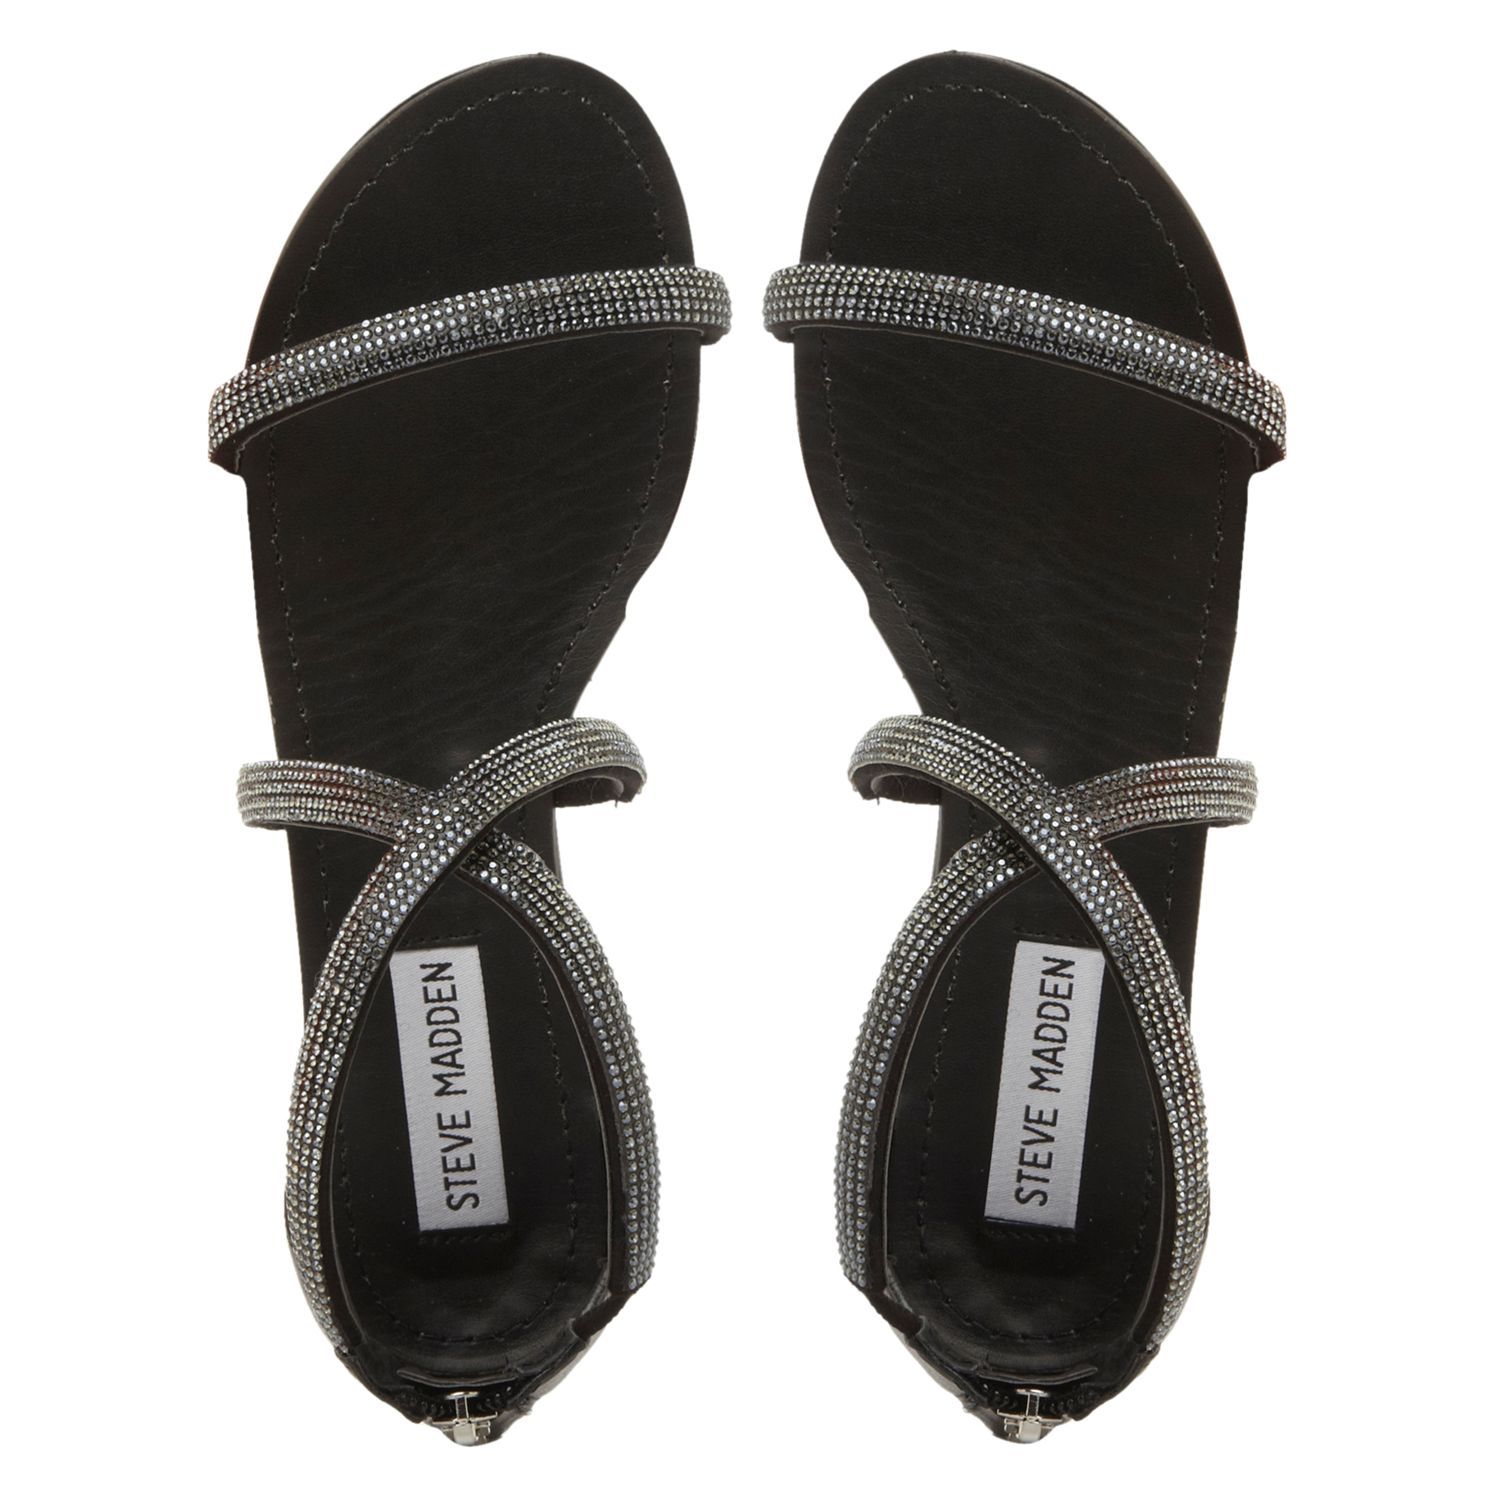 Buy Steve Madden Zsaza Cross Over Strap Sandals, Black Online at ...